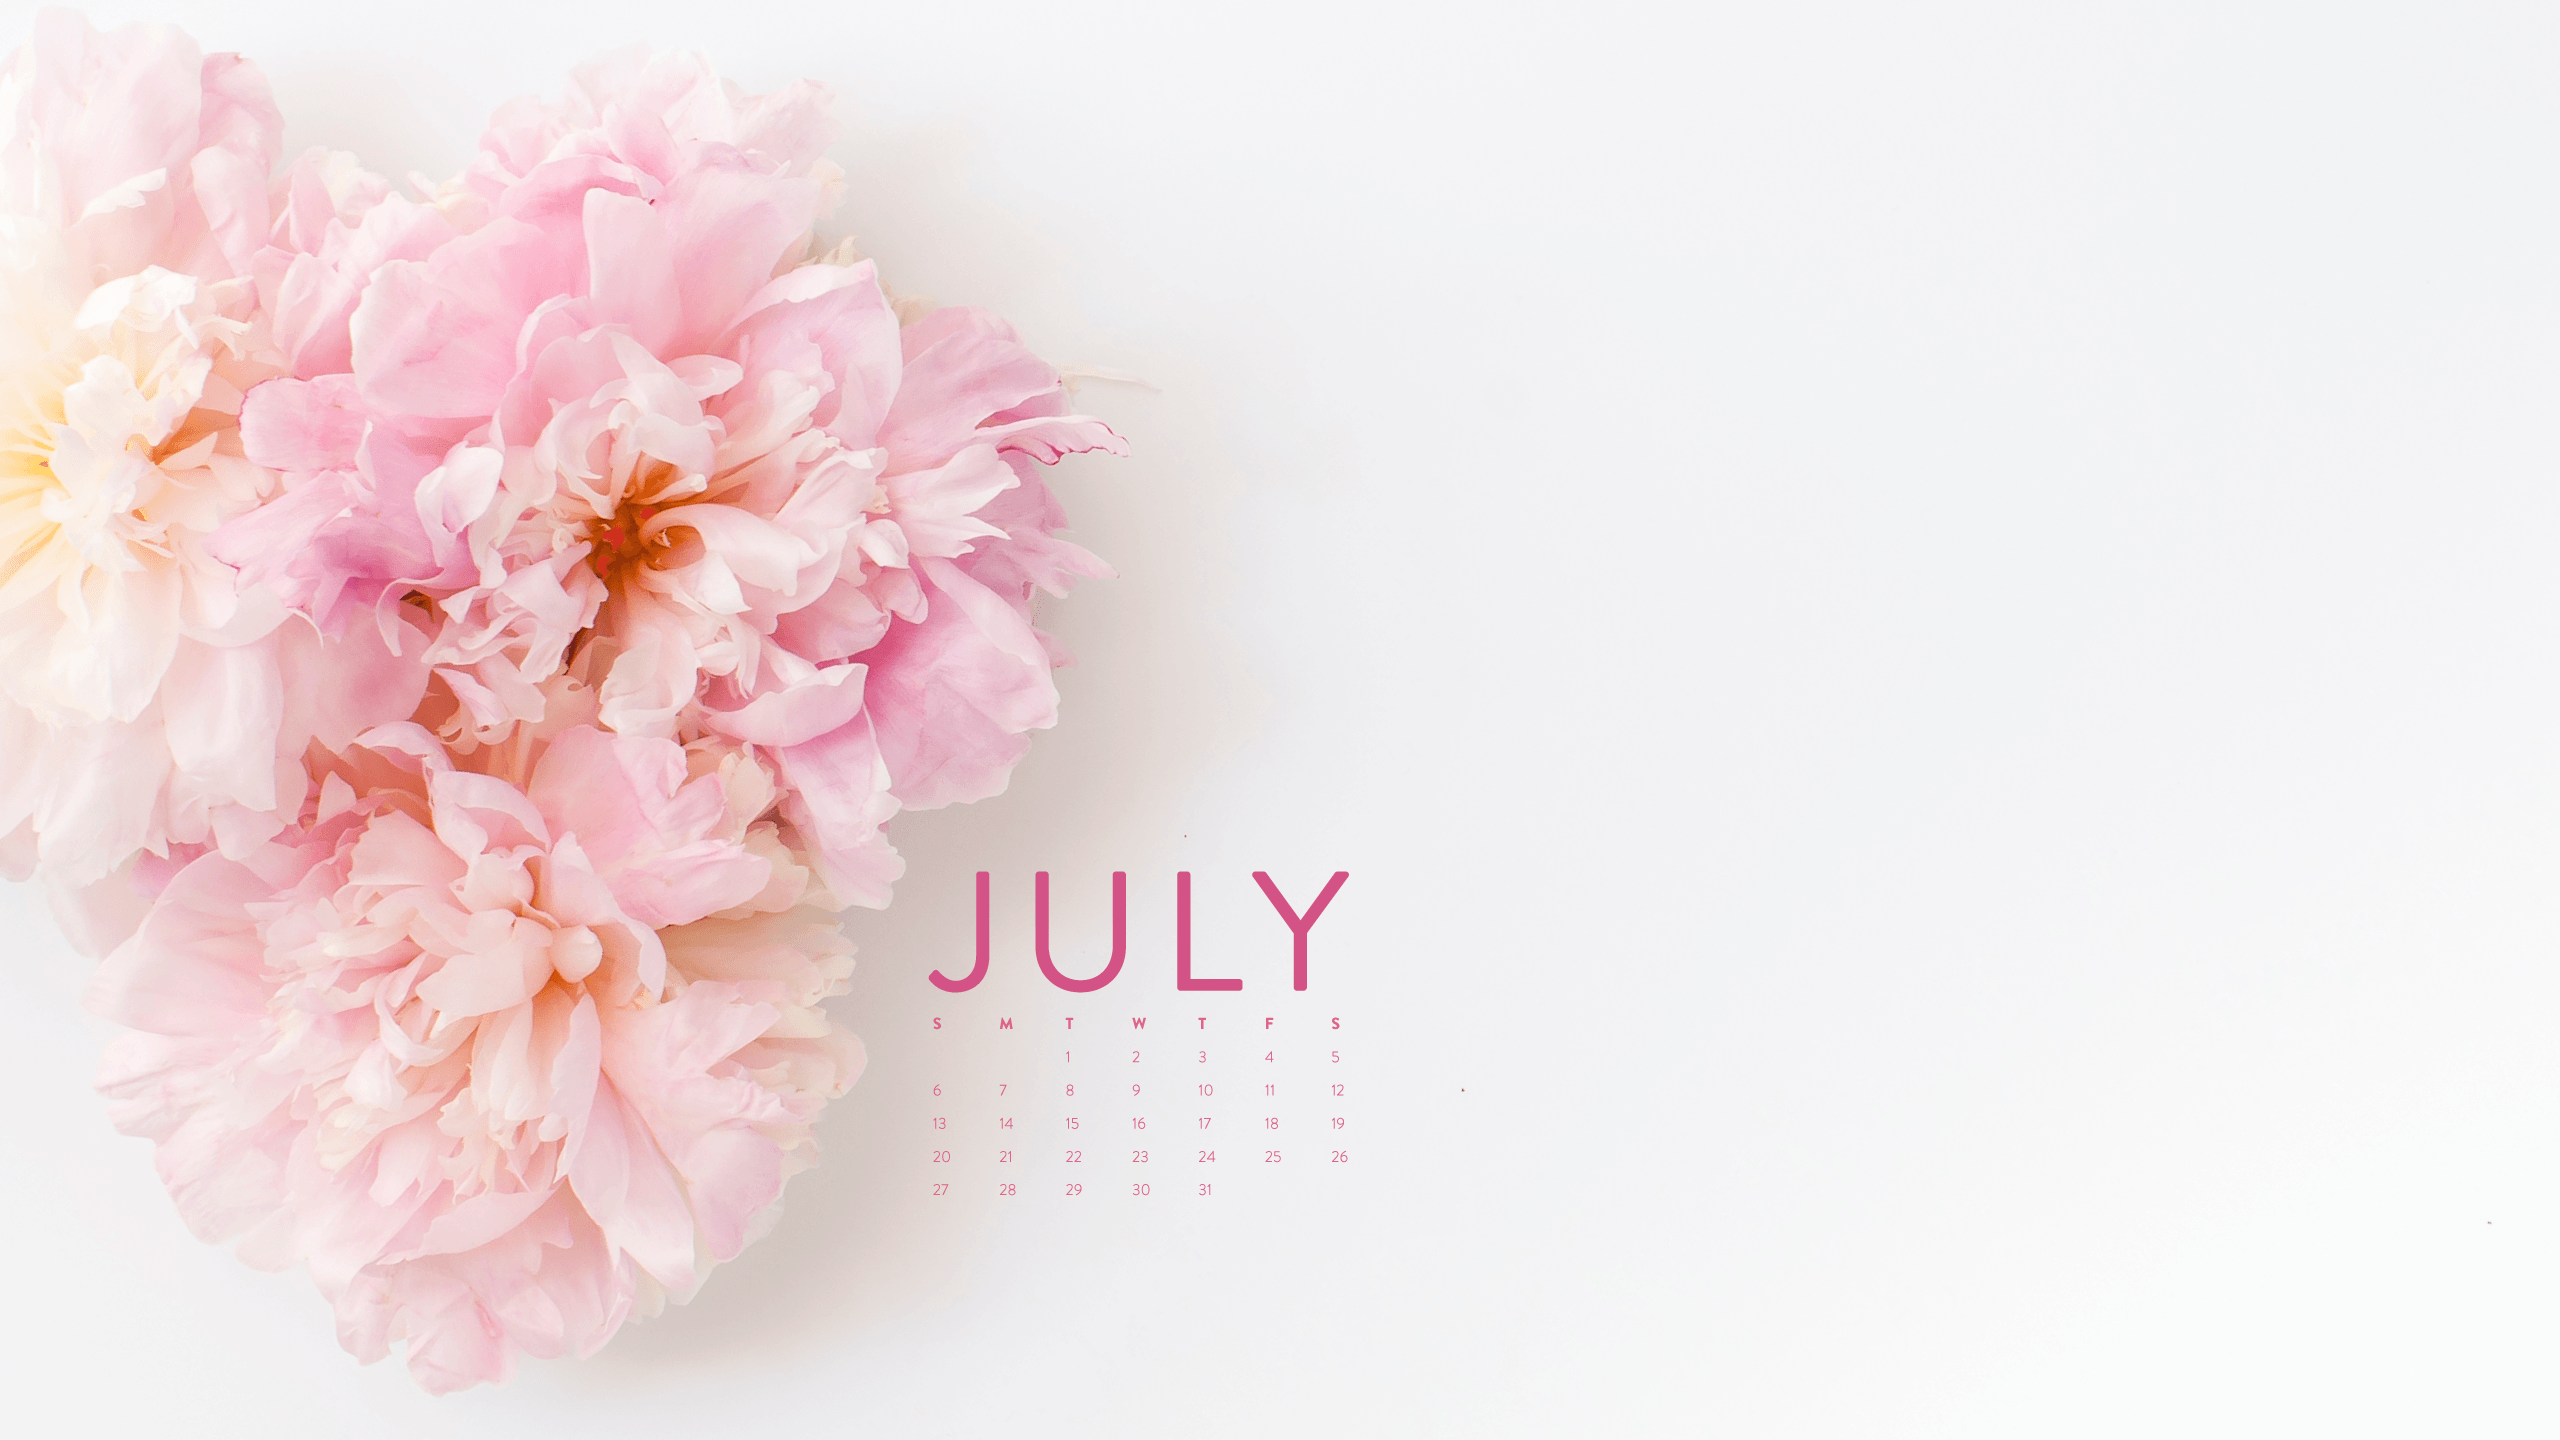 Happy July! Desktop Calendar + IPhone Wallpaper